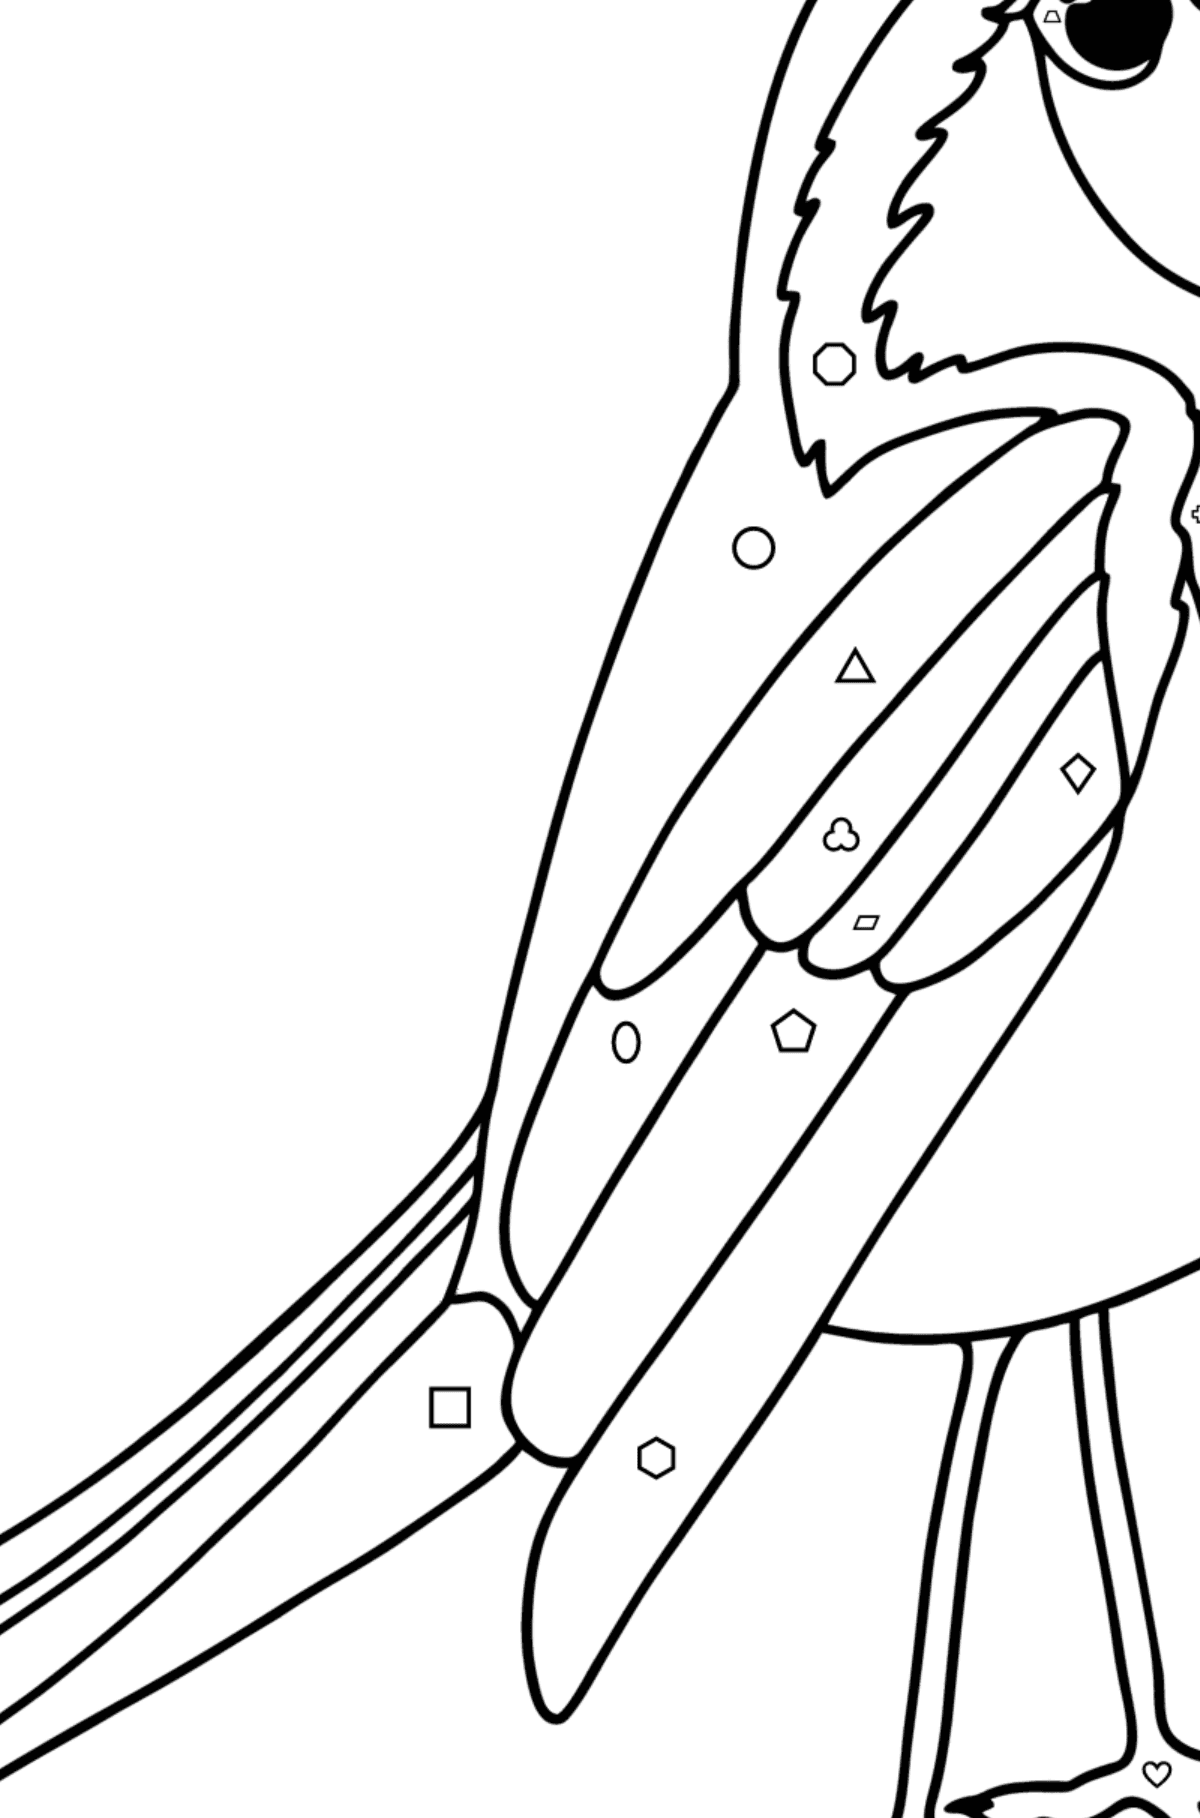 Раскраска Птица Зяблик - Картинка высокого качества для Детей